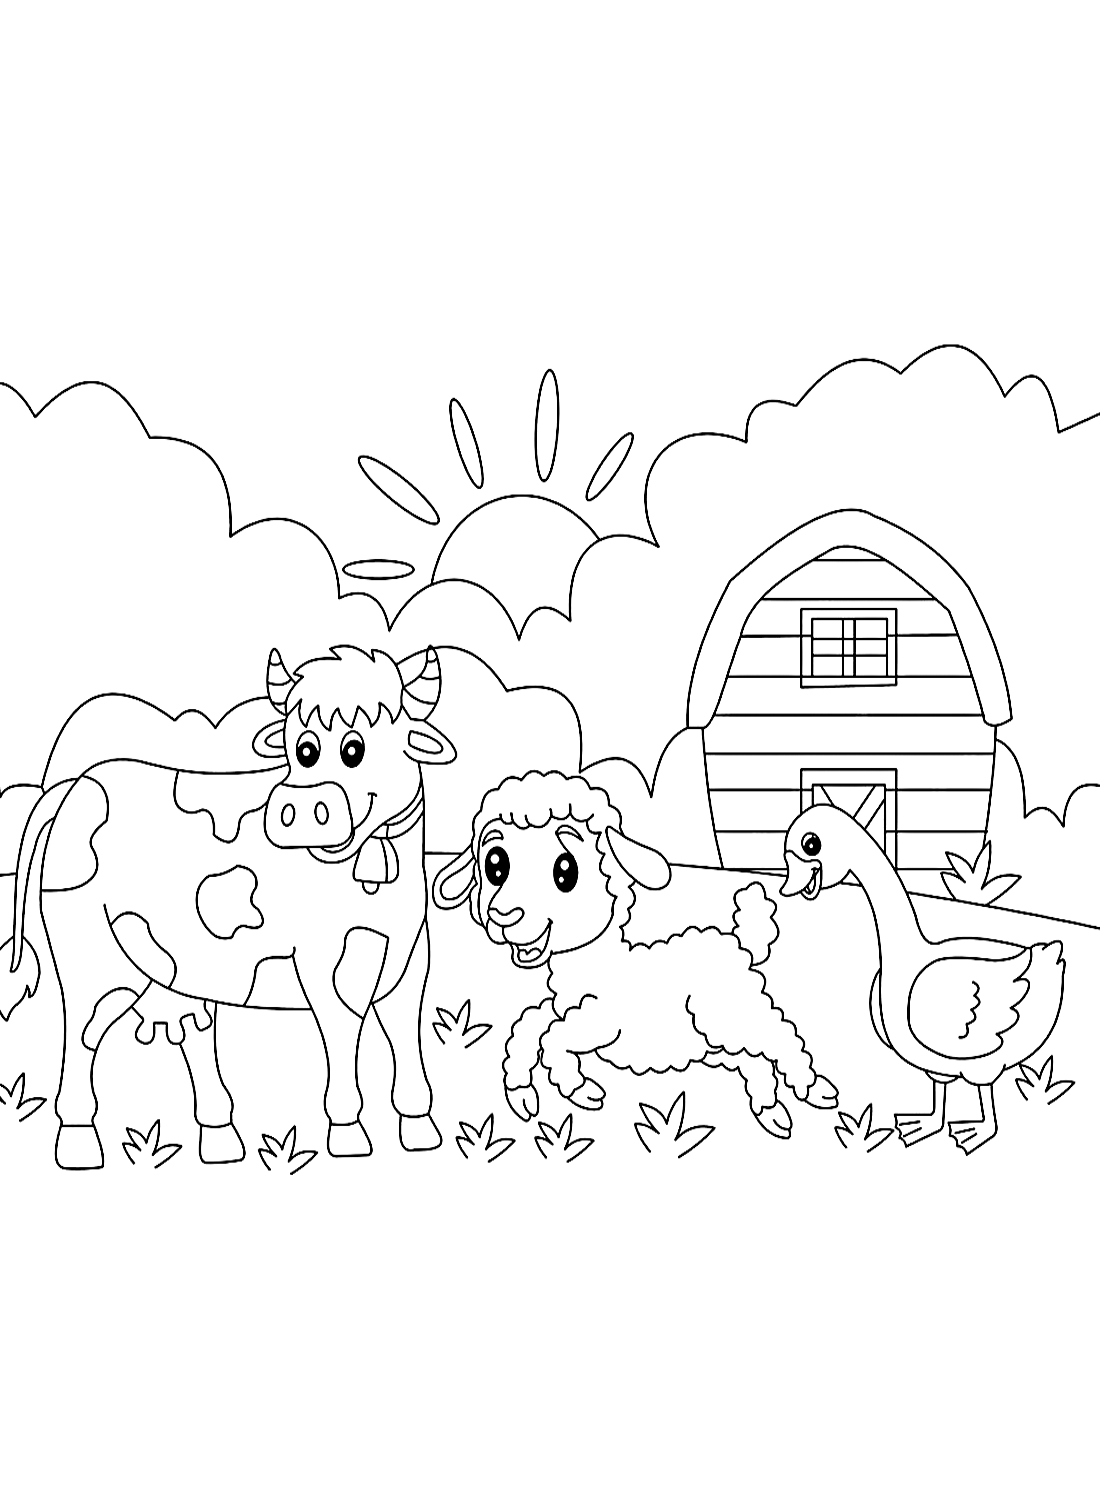 Página para colorir de vaca na fazenda from Cow